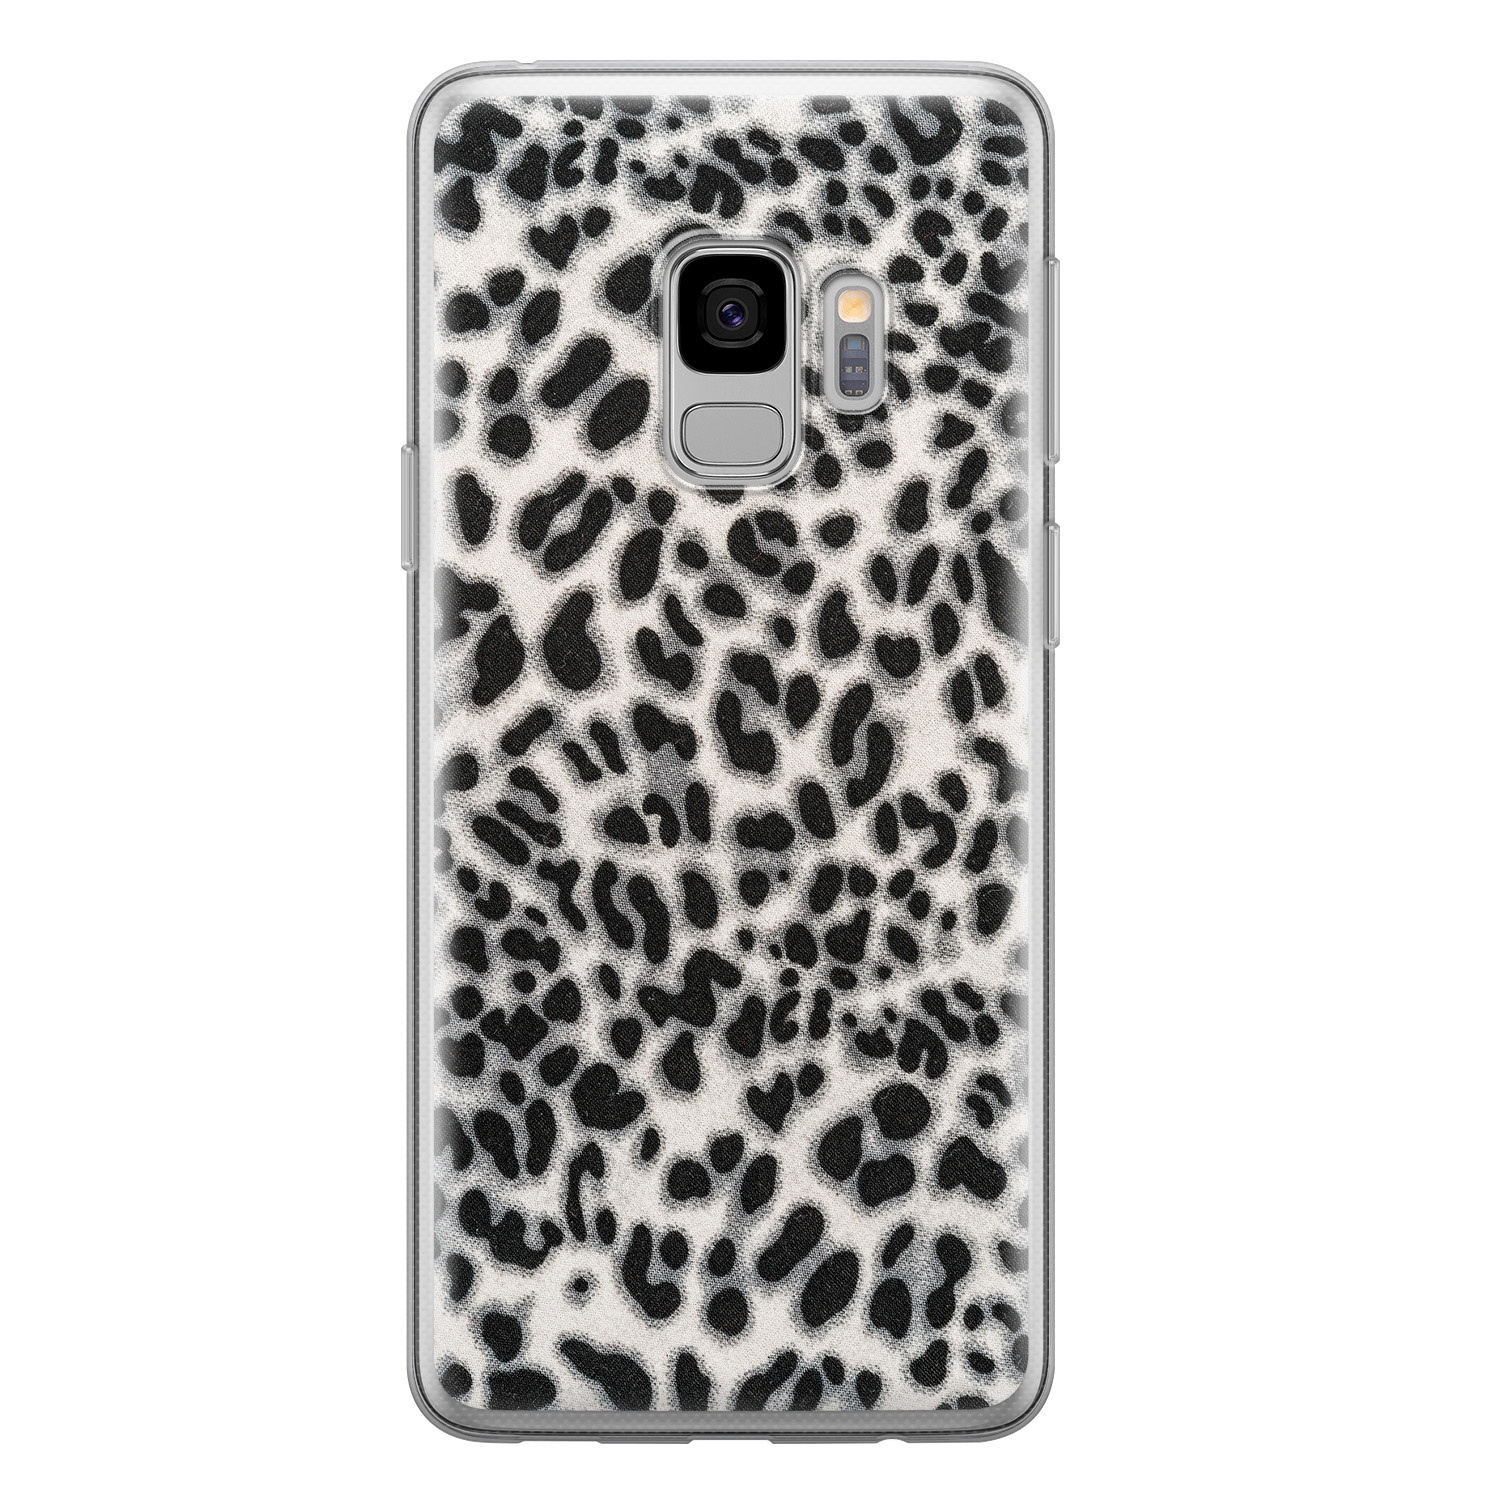 Leuke Telefoonhoesjes Samsung Galaxy S9 siliconen hoesje - Luipaard grijs